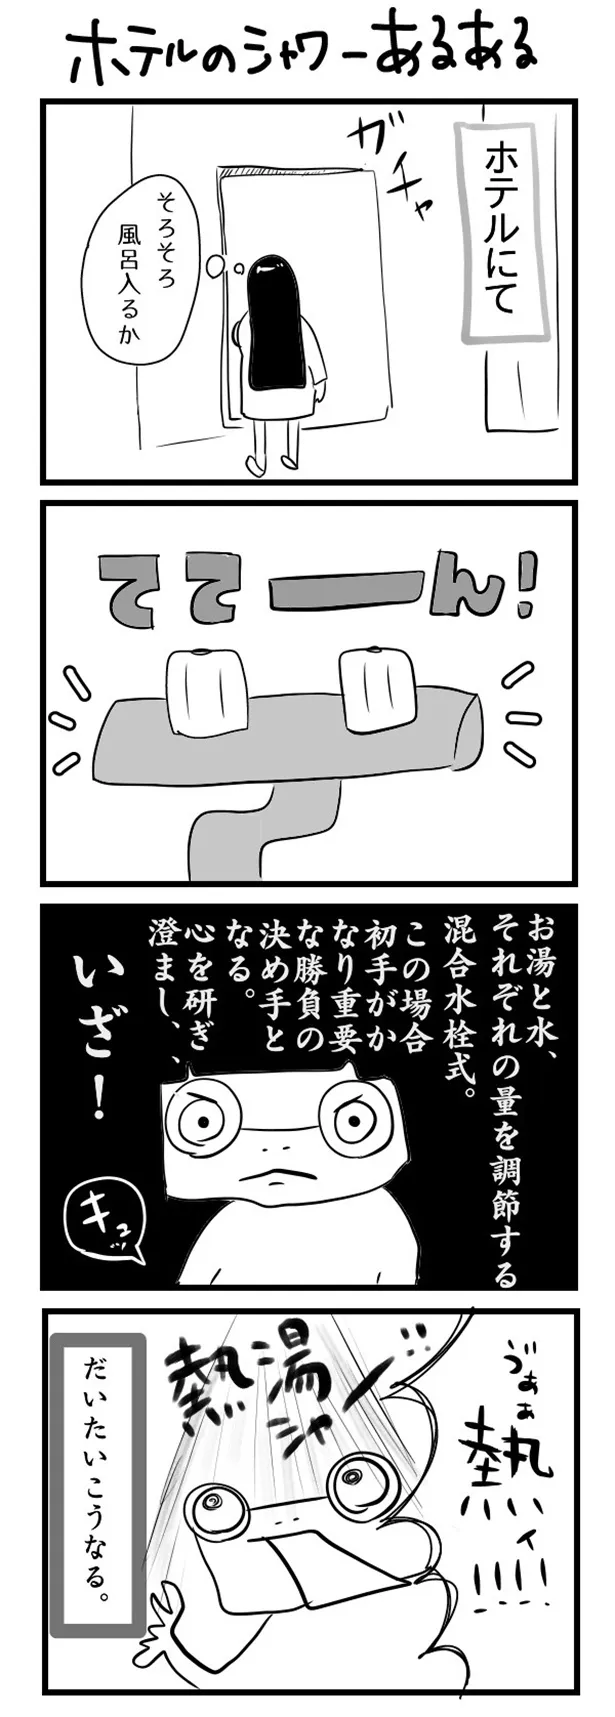 GANG PARADEユイ・ガ・ドクソンのオリジナルWEB漫画「“社不ドル”ハピラキ日記」(9)より　「ホテルのシャワーあるある」